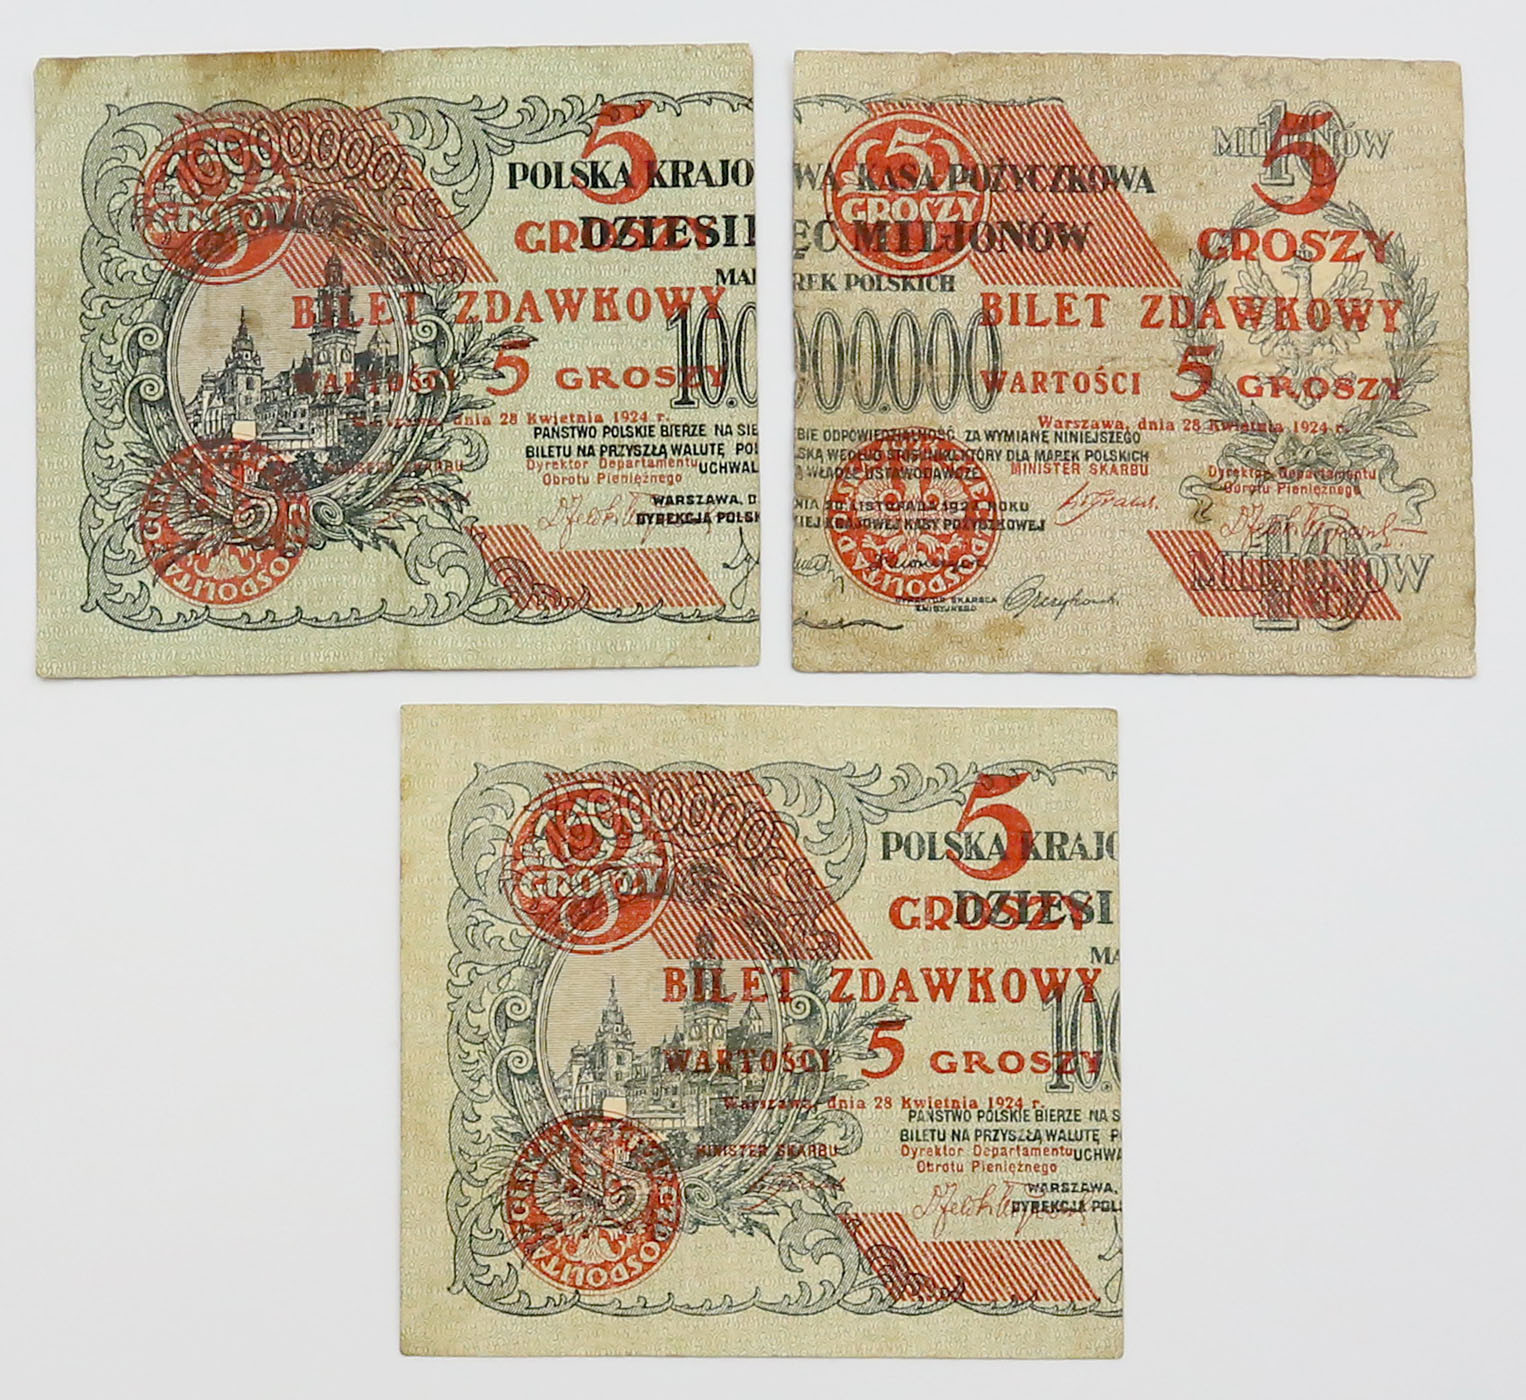 5 groszy 1924 2 x lewy i prawy, zestaw 3 sztuk